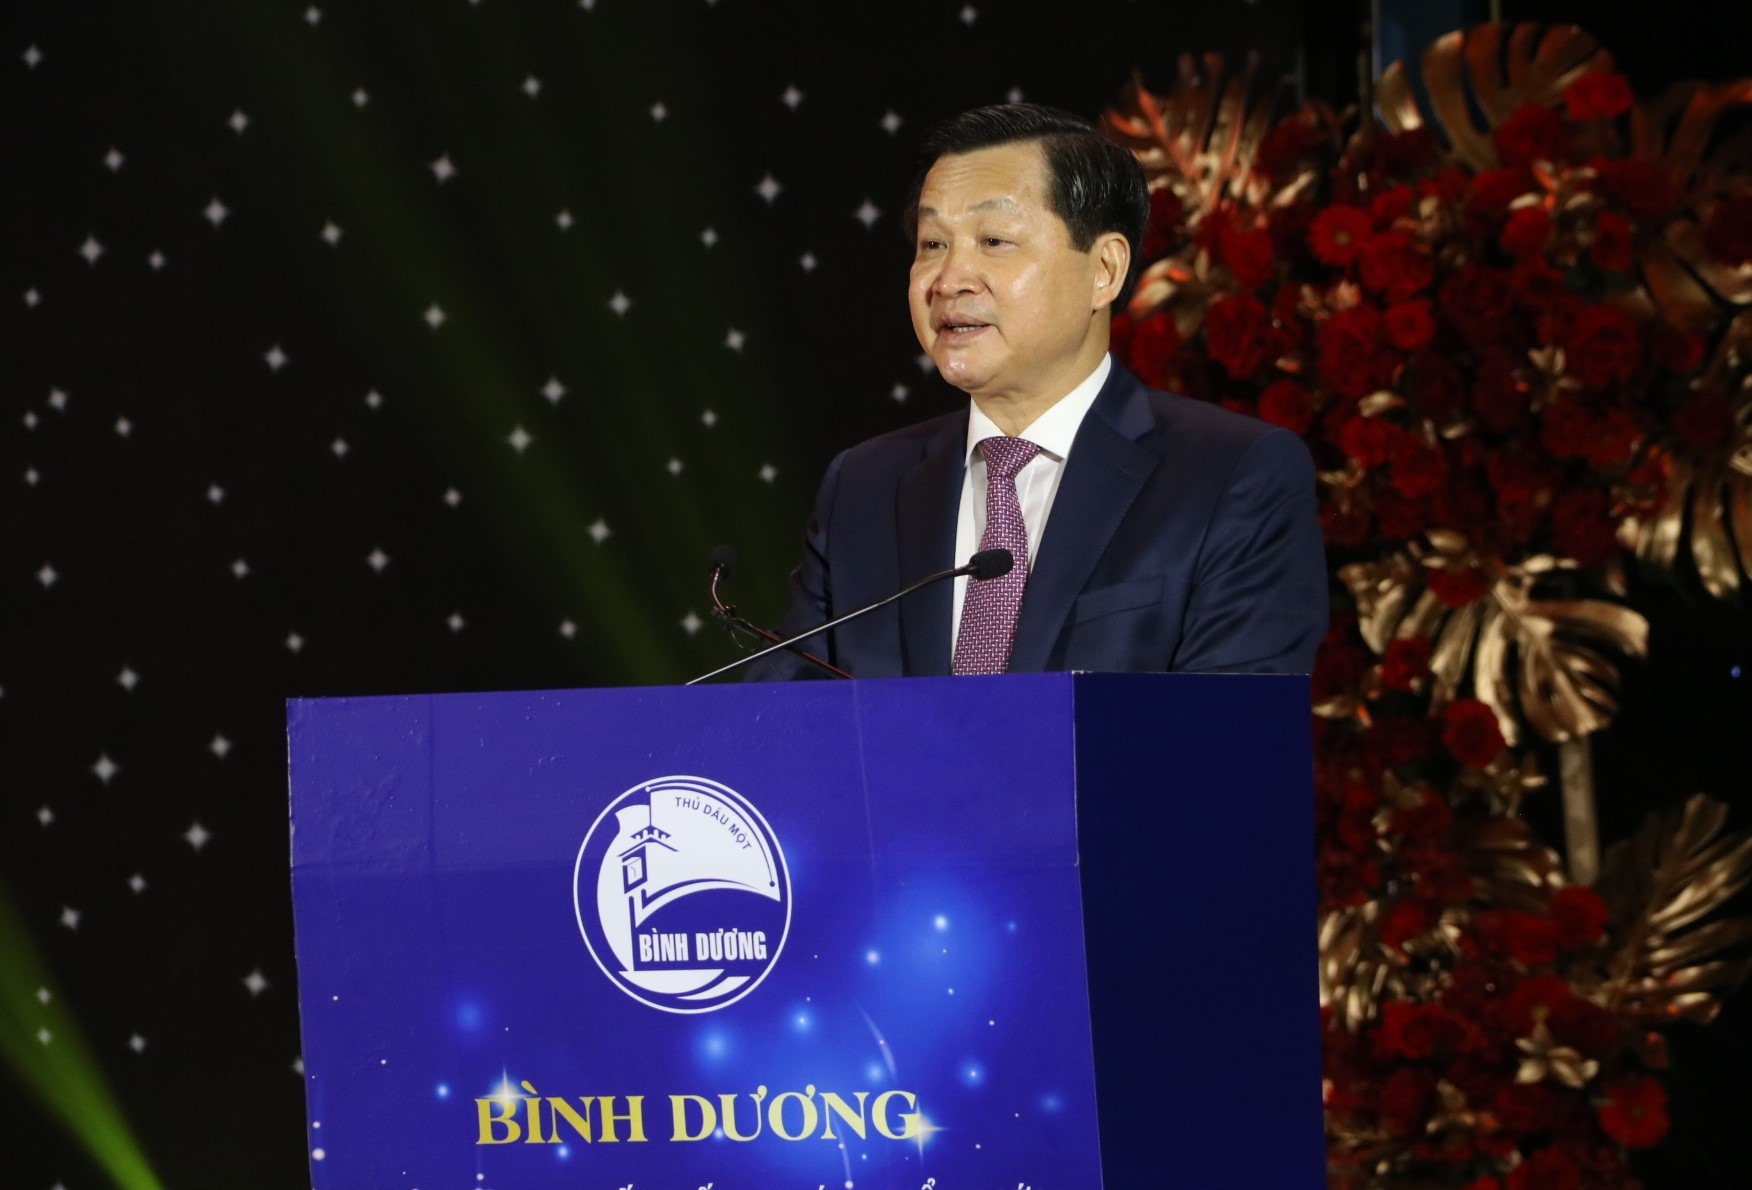 Phó Thủ tướng Chính phủ Lê Minh Khái phát biểu tại chương trình. Ảnh: Đình Trọng